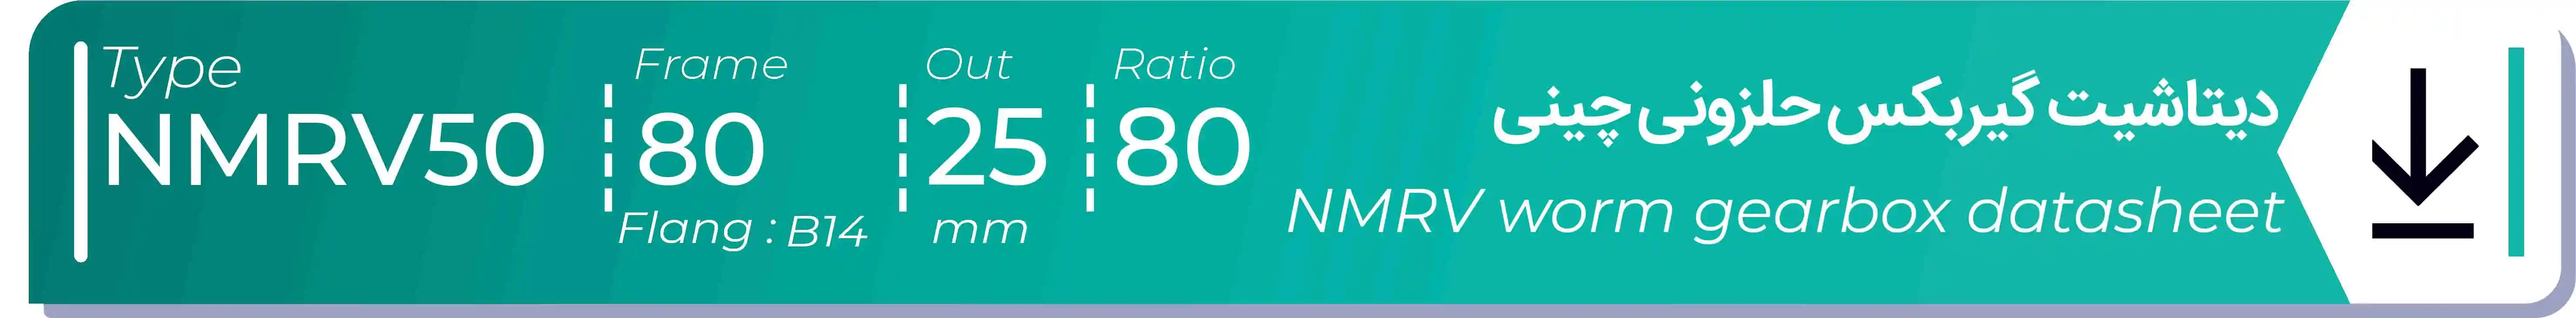  دیتاشیت و مشخصات فنی گیربکس حلزونی چینی   NMRV50  -  با خروجی 25- میلی متر و نسبت80 و فریم 80